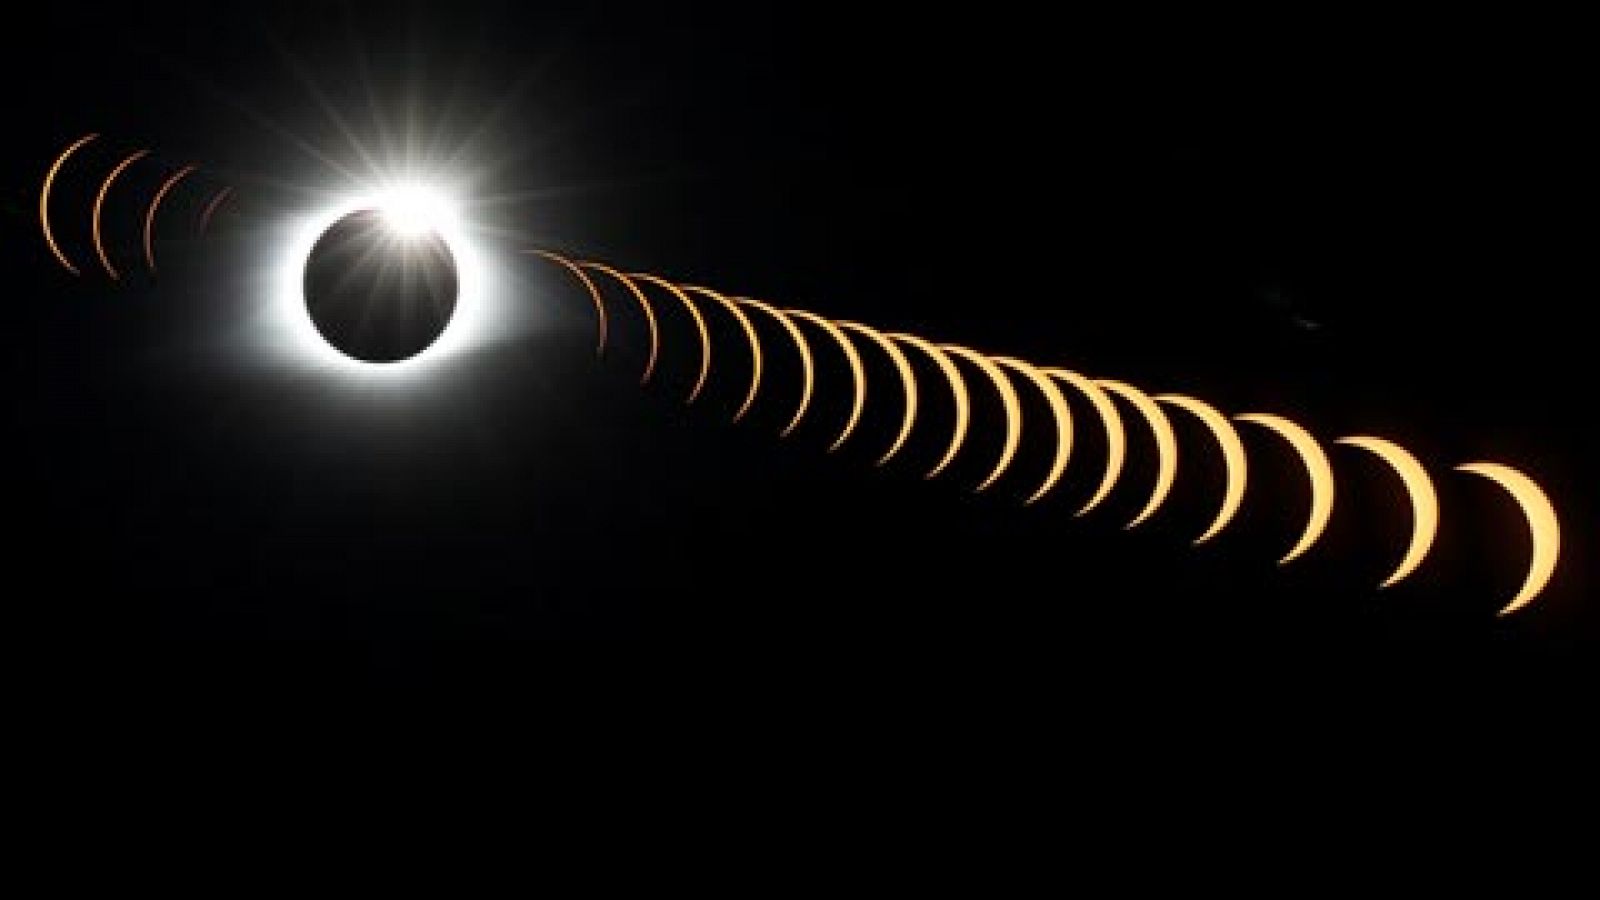 El eclipse ms visto y fotografiado de la historia